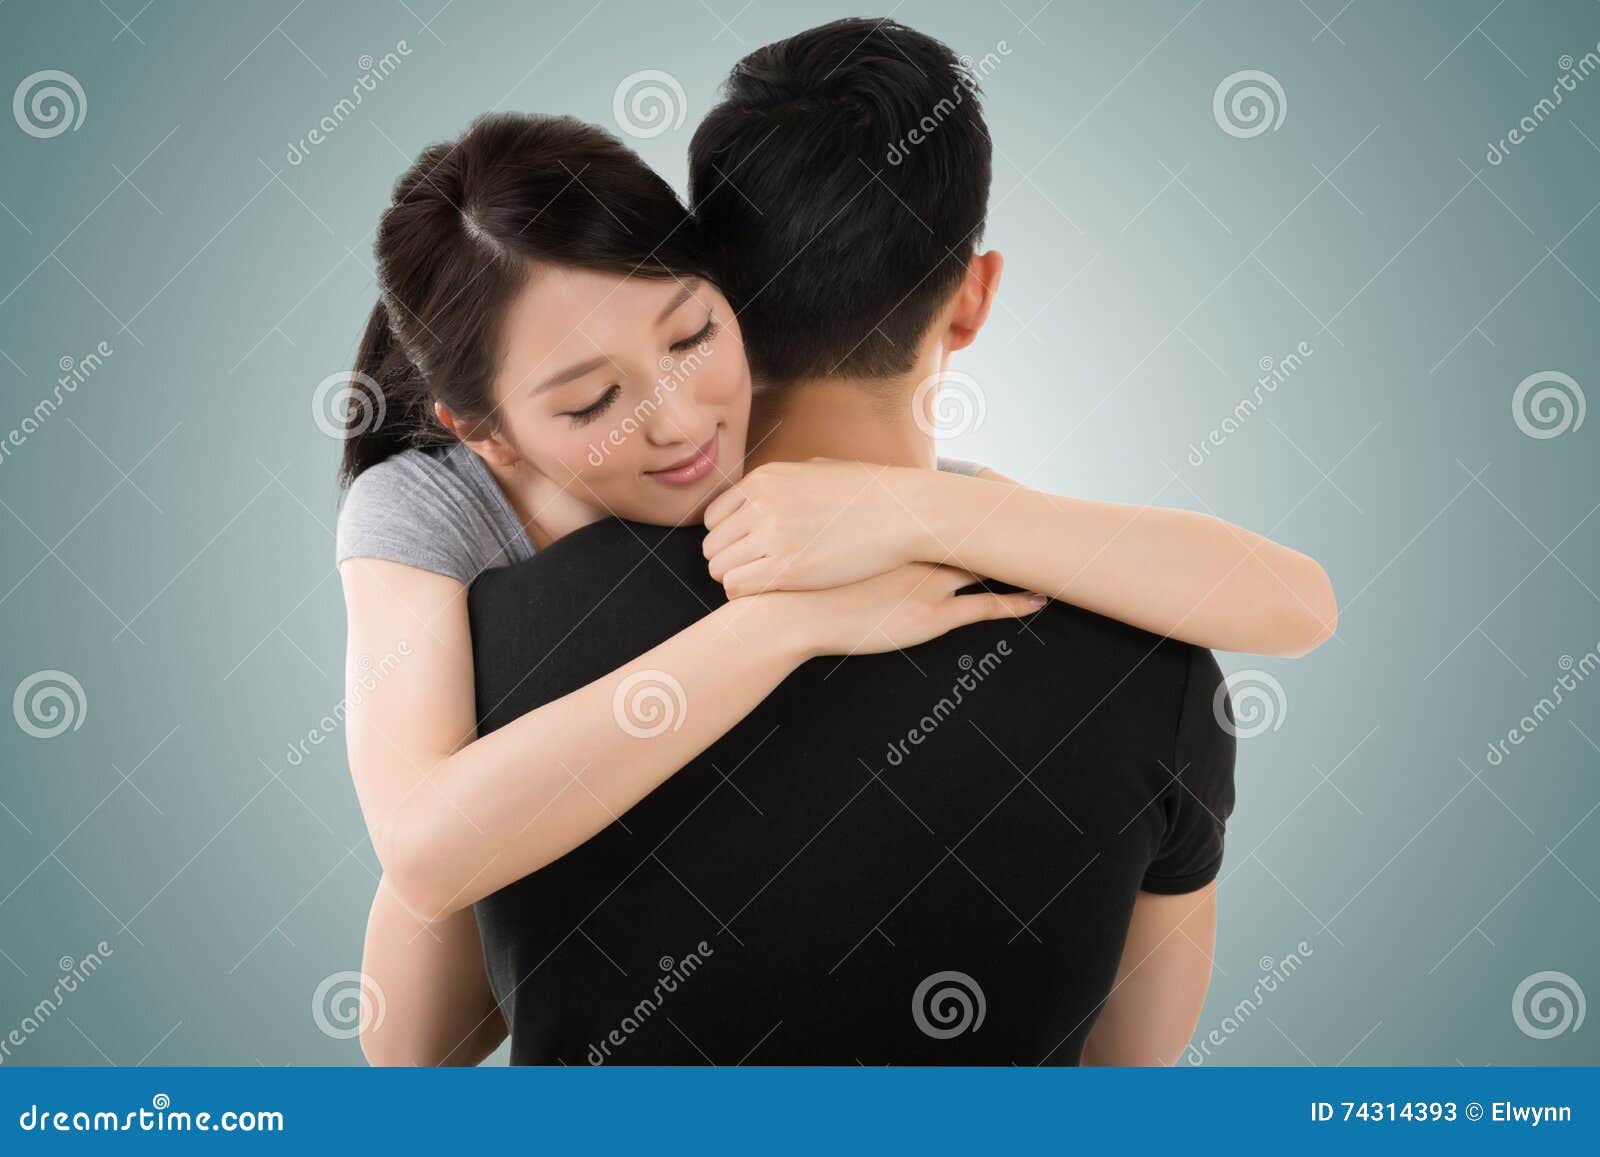 couple hug and comfort